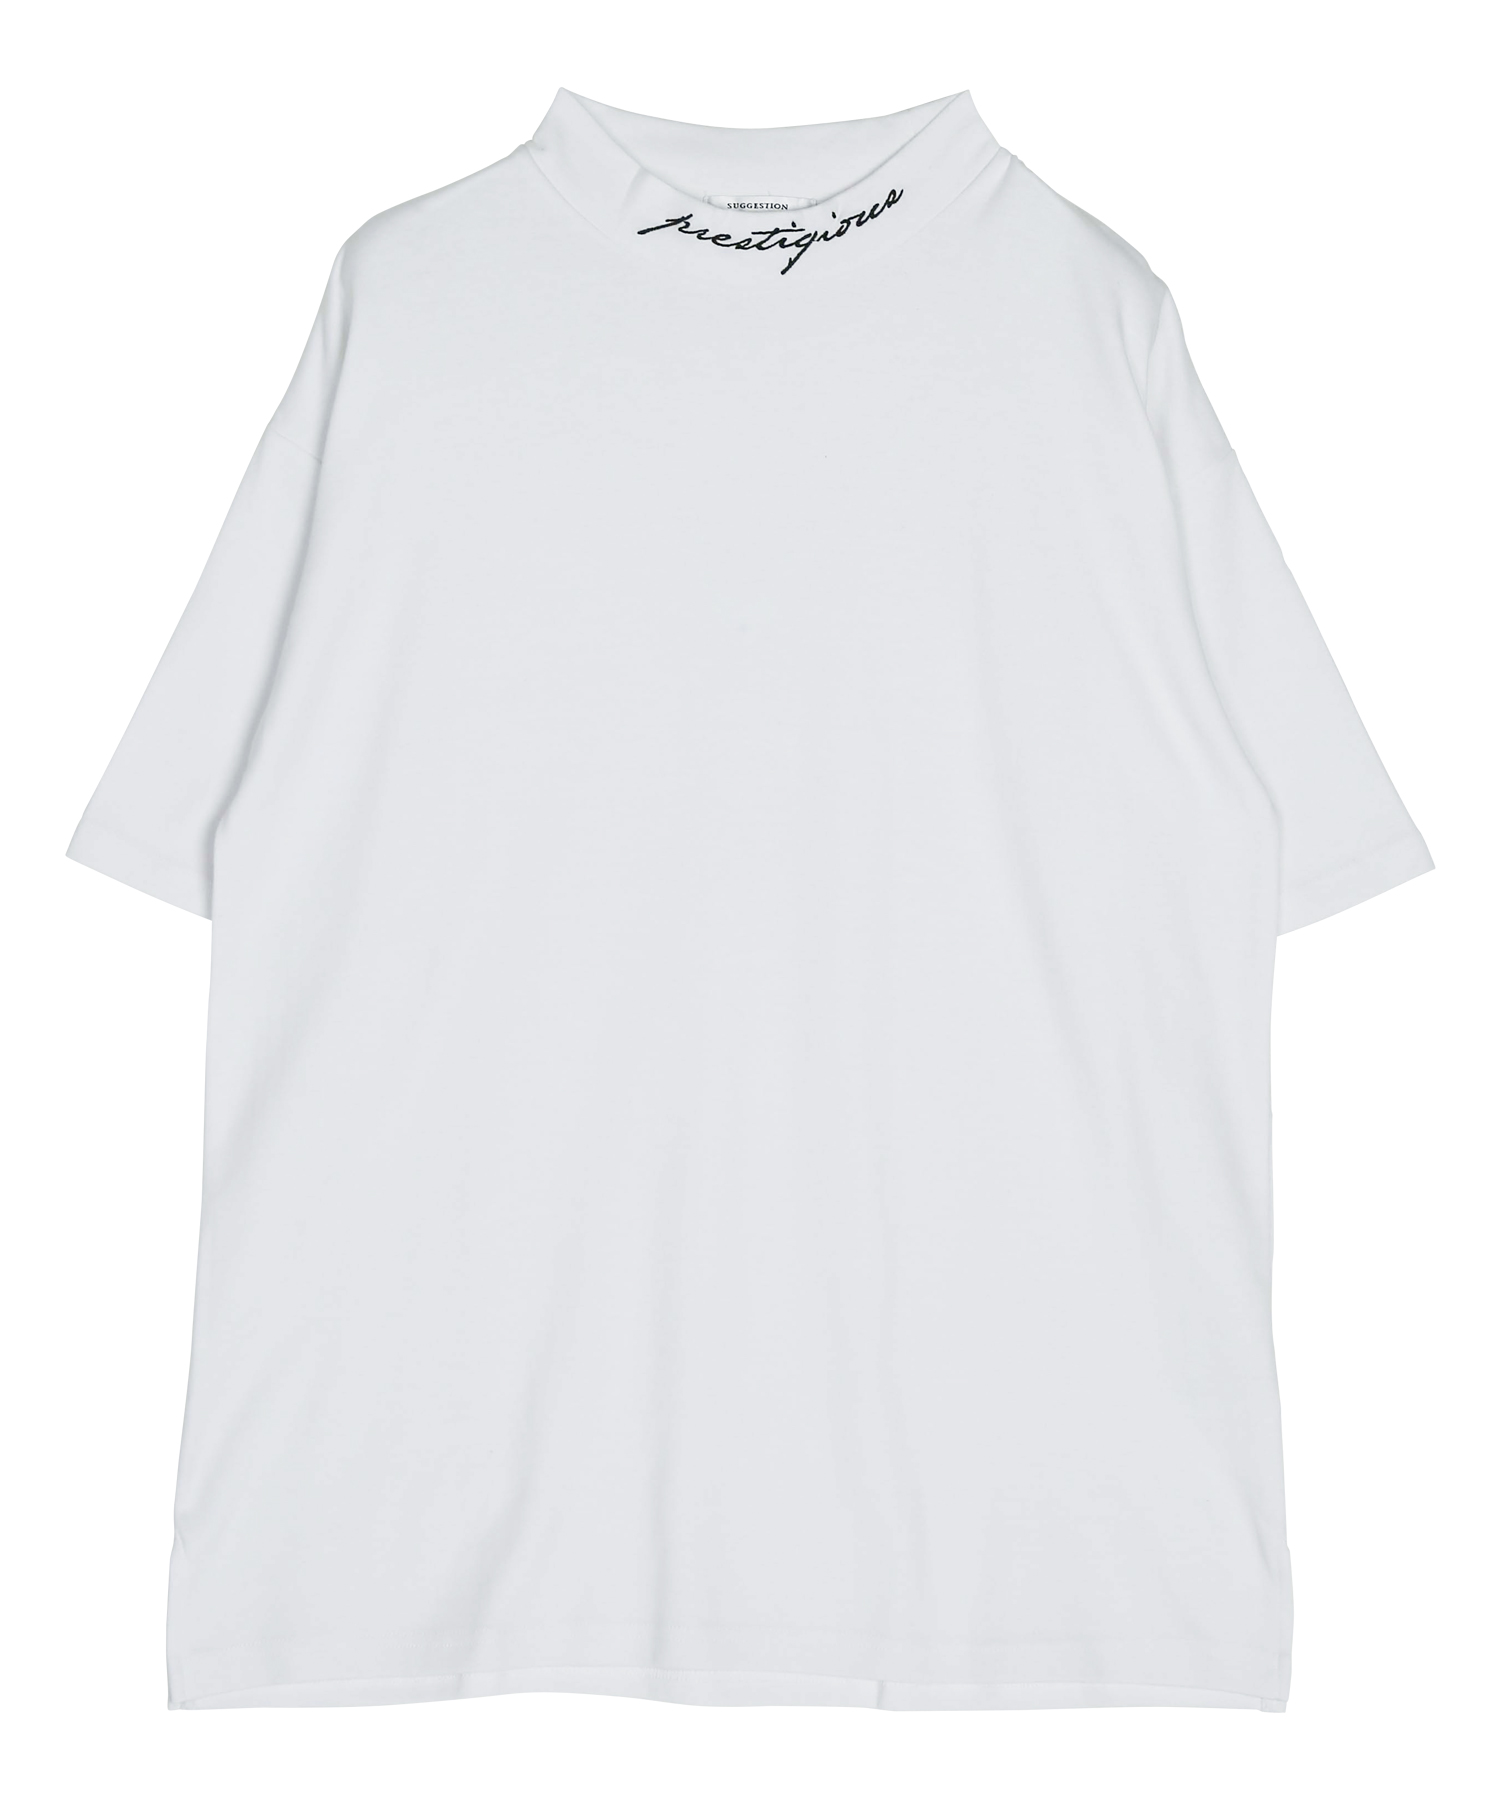 モックネックビッグTシャツ / Tシャツ メンズ ティーシャツ 半袖 